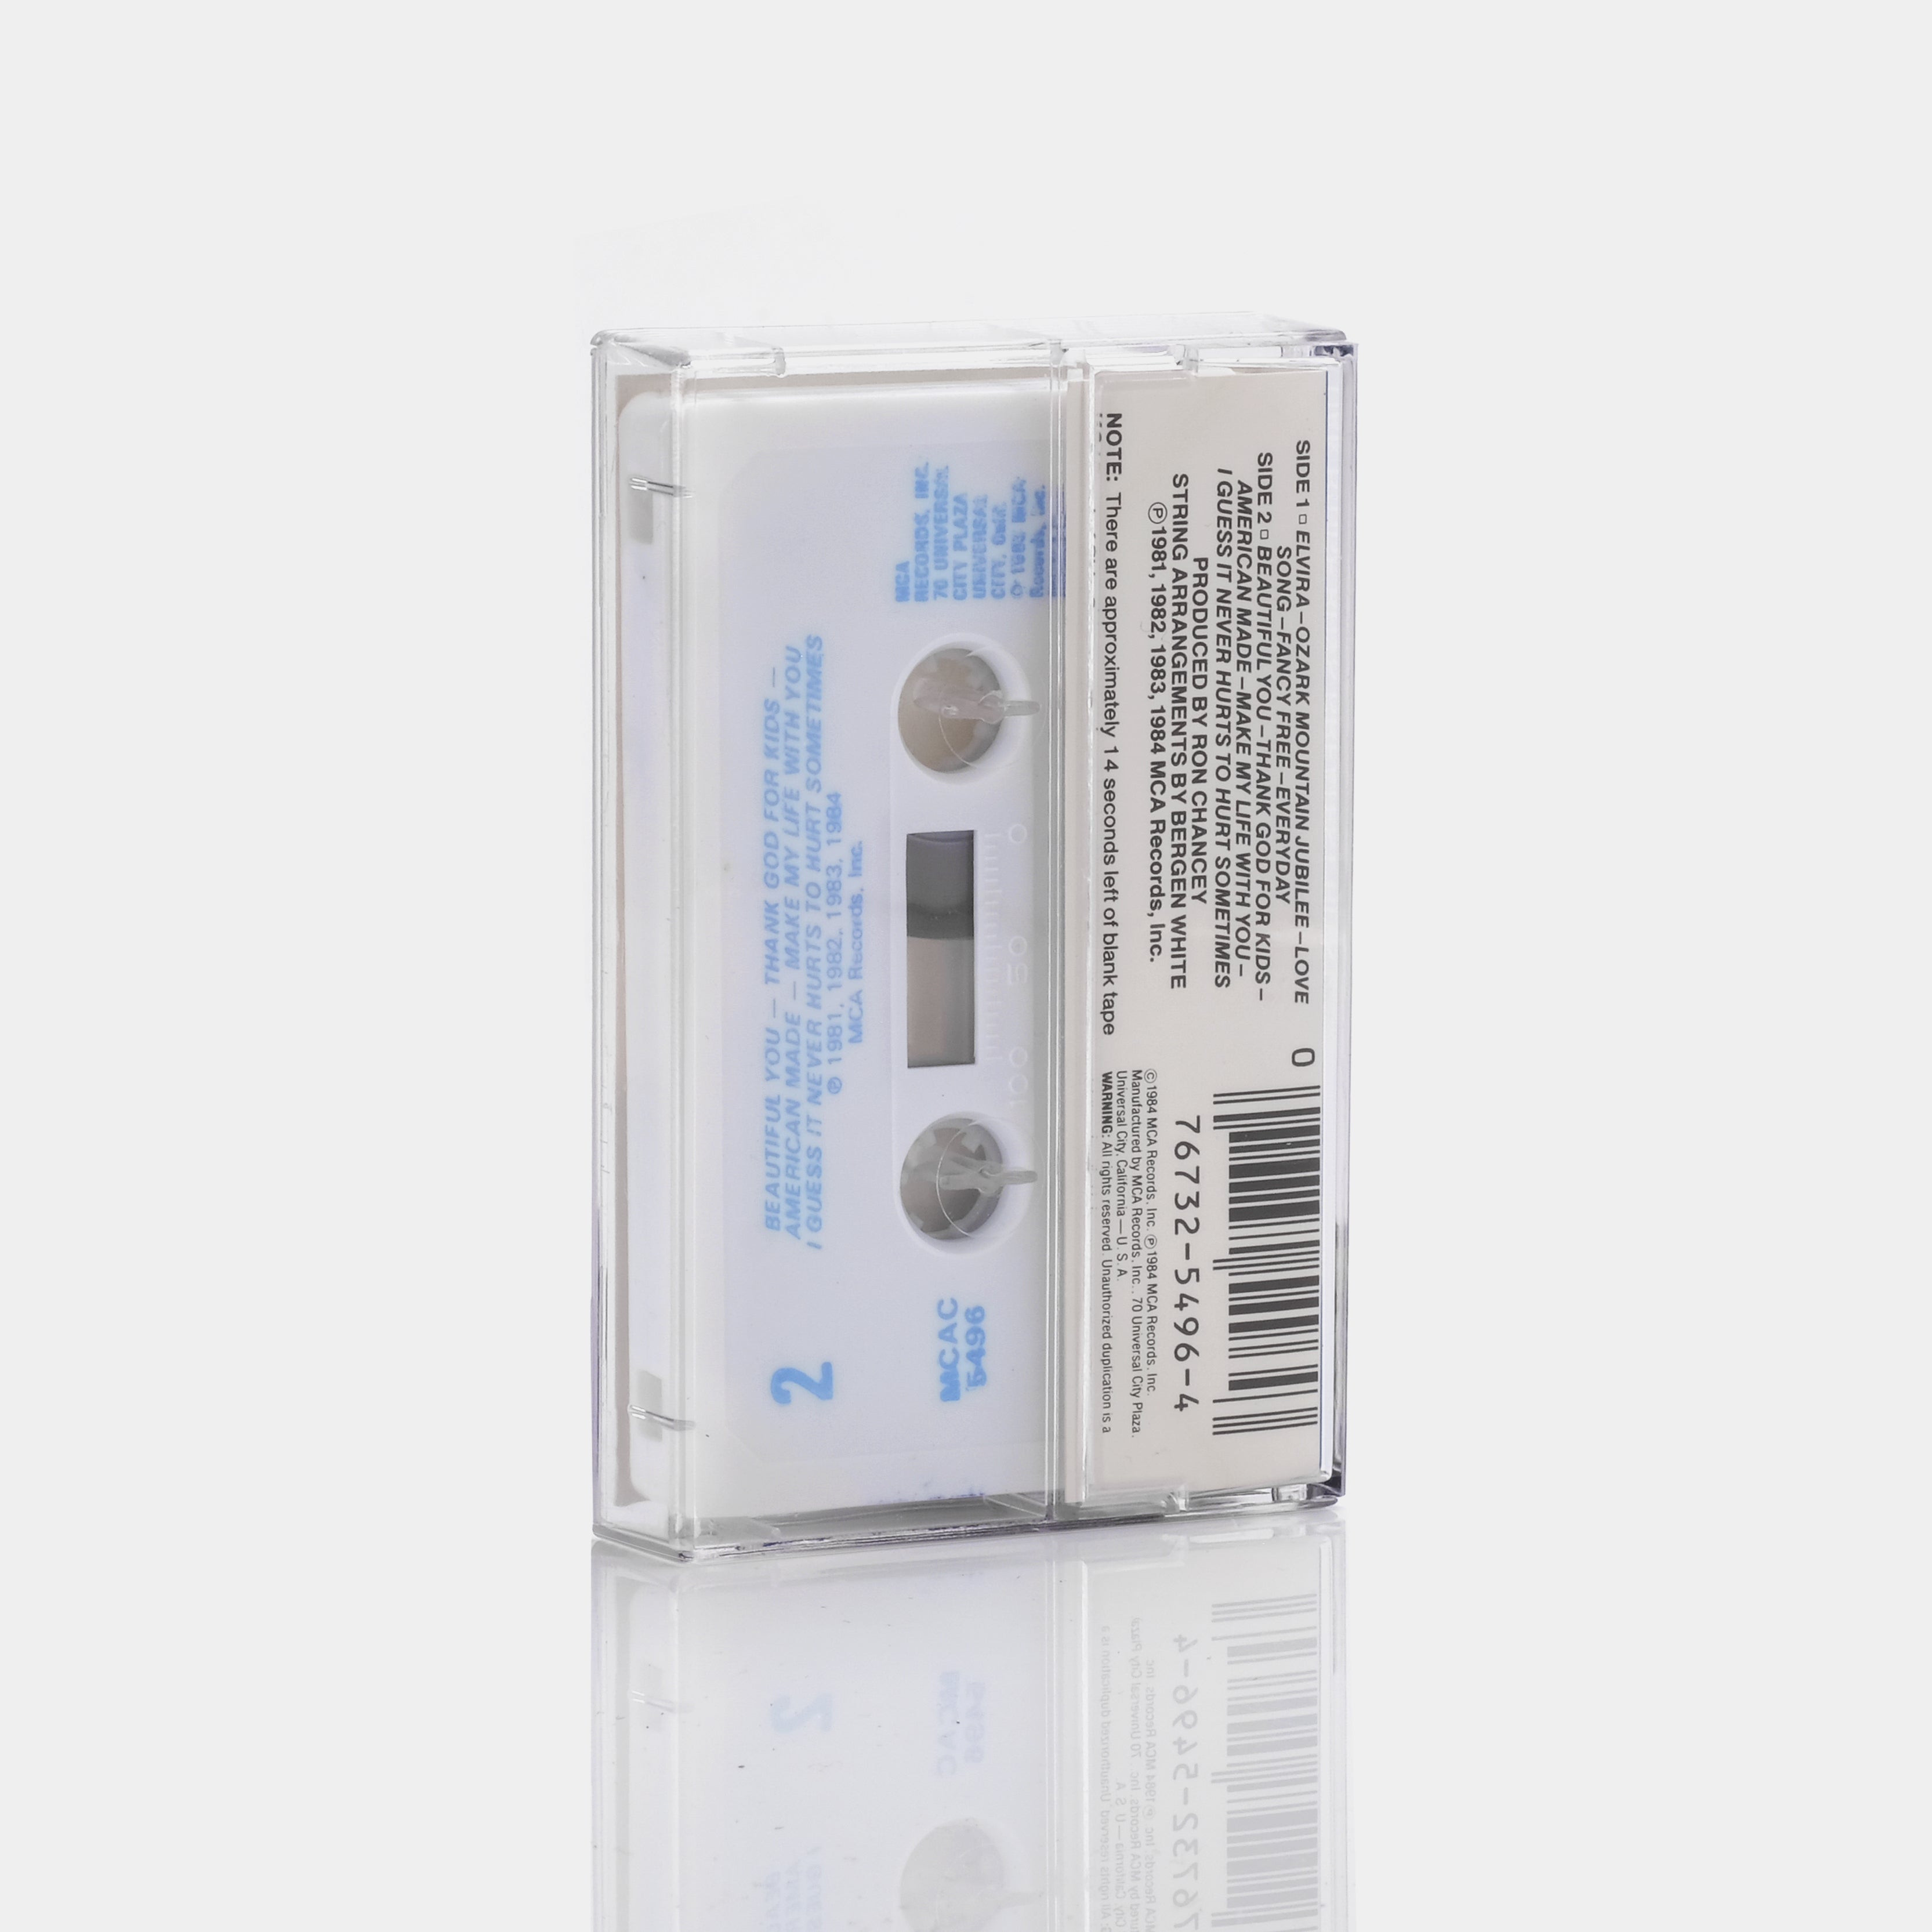 Oak Ridge Boys - Oak Ridge Boys Greatest Hits 2 Cassette Tape